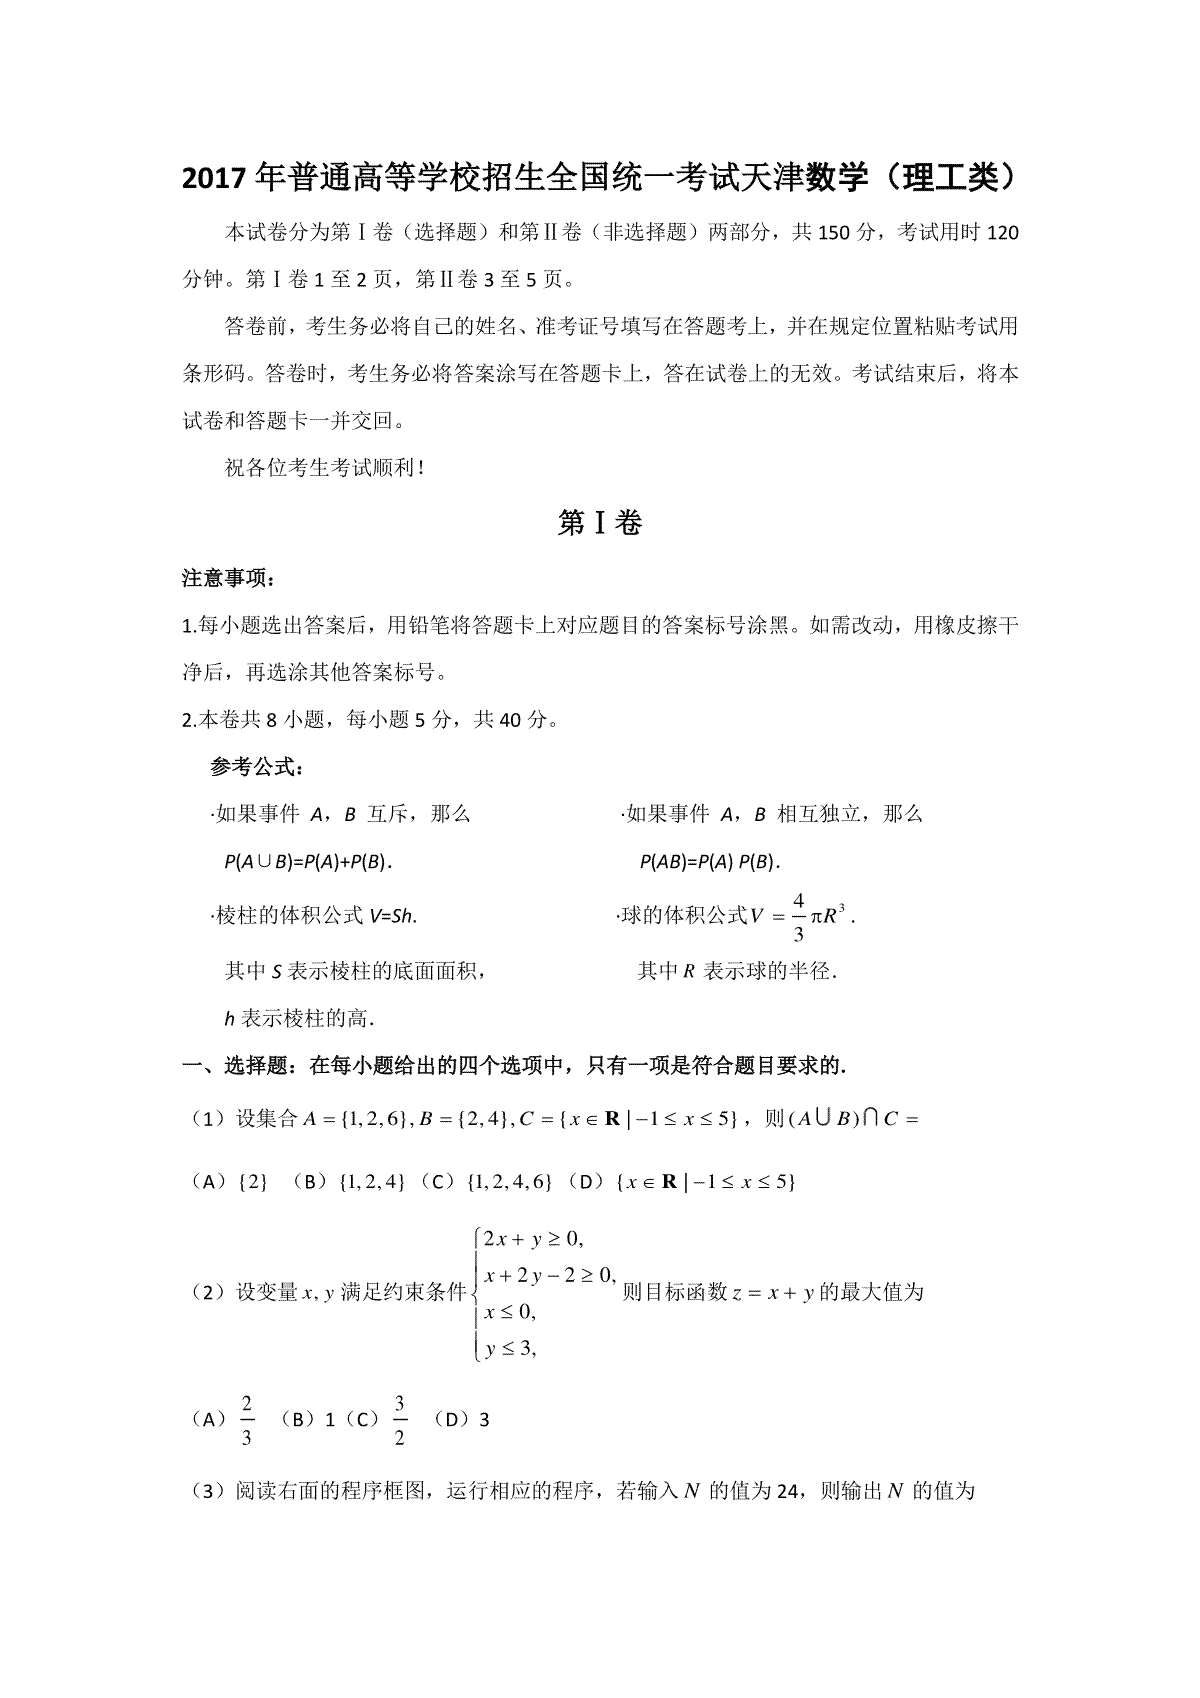 2017年高考理科数学试题(天津卷)及参考答案